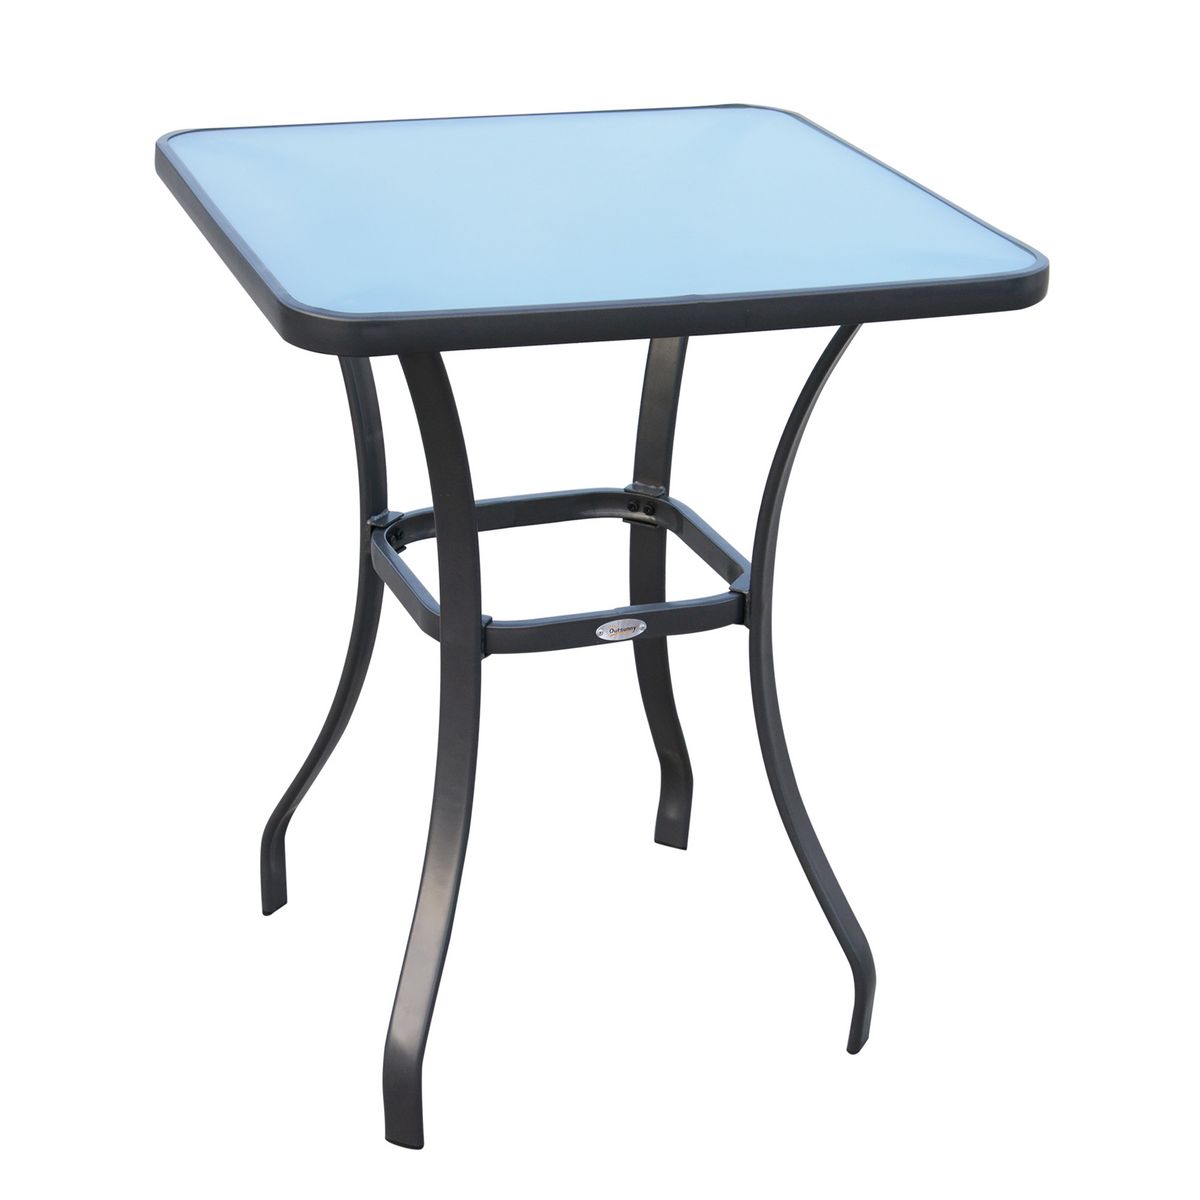 OUTSUNNY Table carrée bistro de jardin dim. 68L x 68l x 84H cm métal époxy gris plateau verre trempé granité